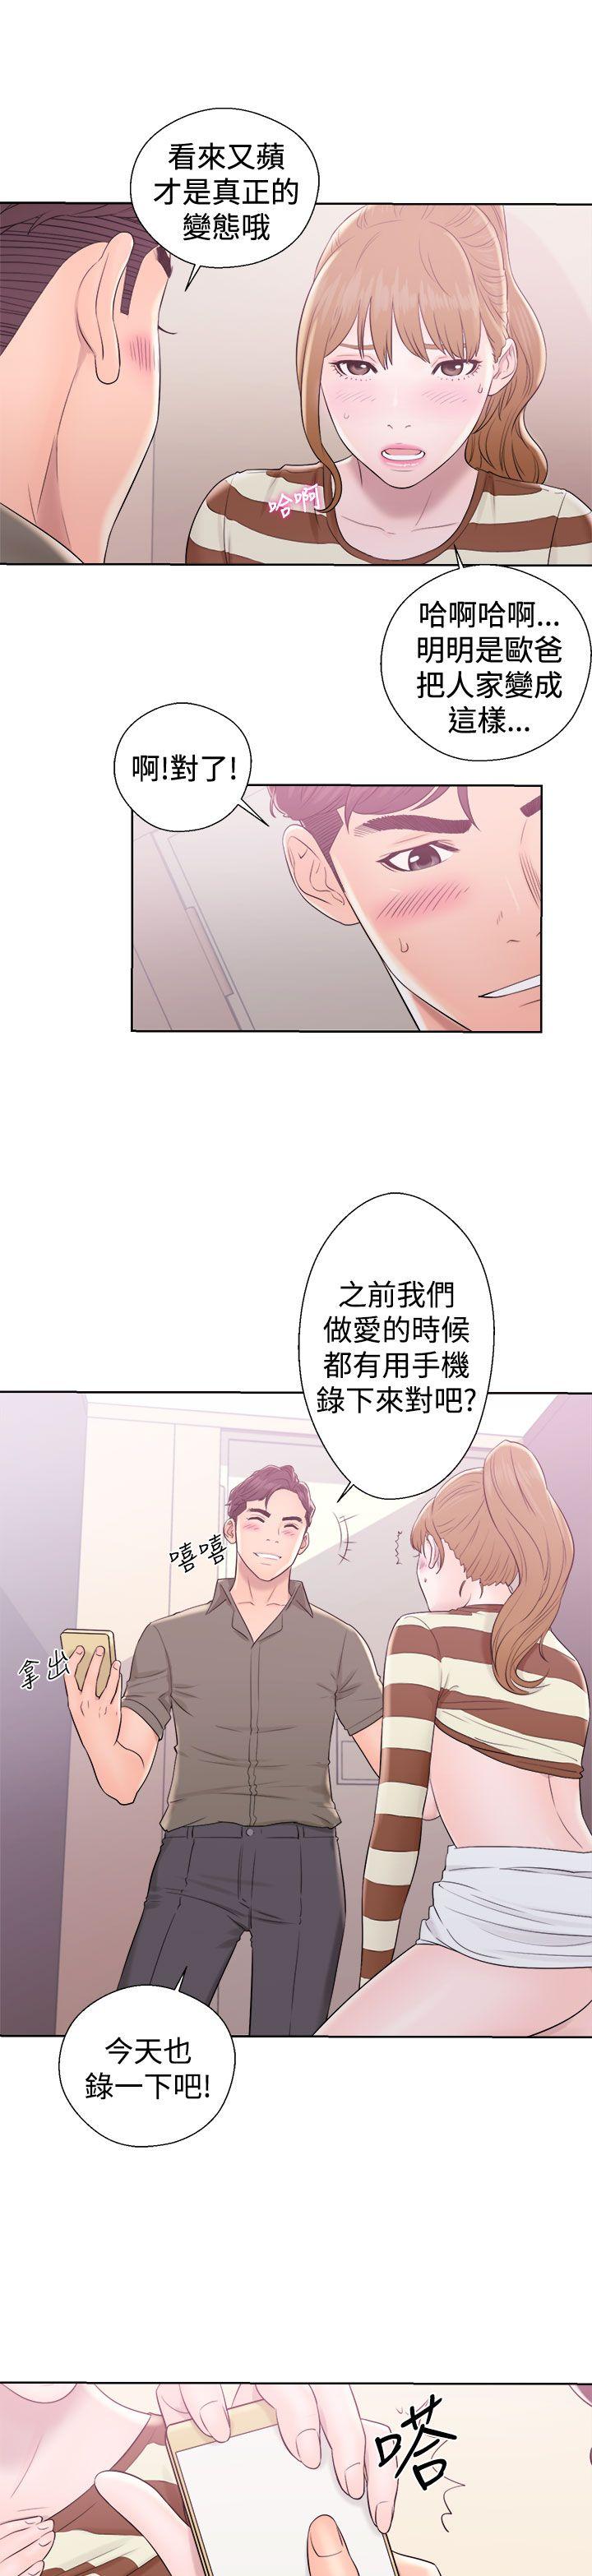 韩国污漫画 青春:逆齡小鮮肉 第8话 41